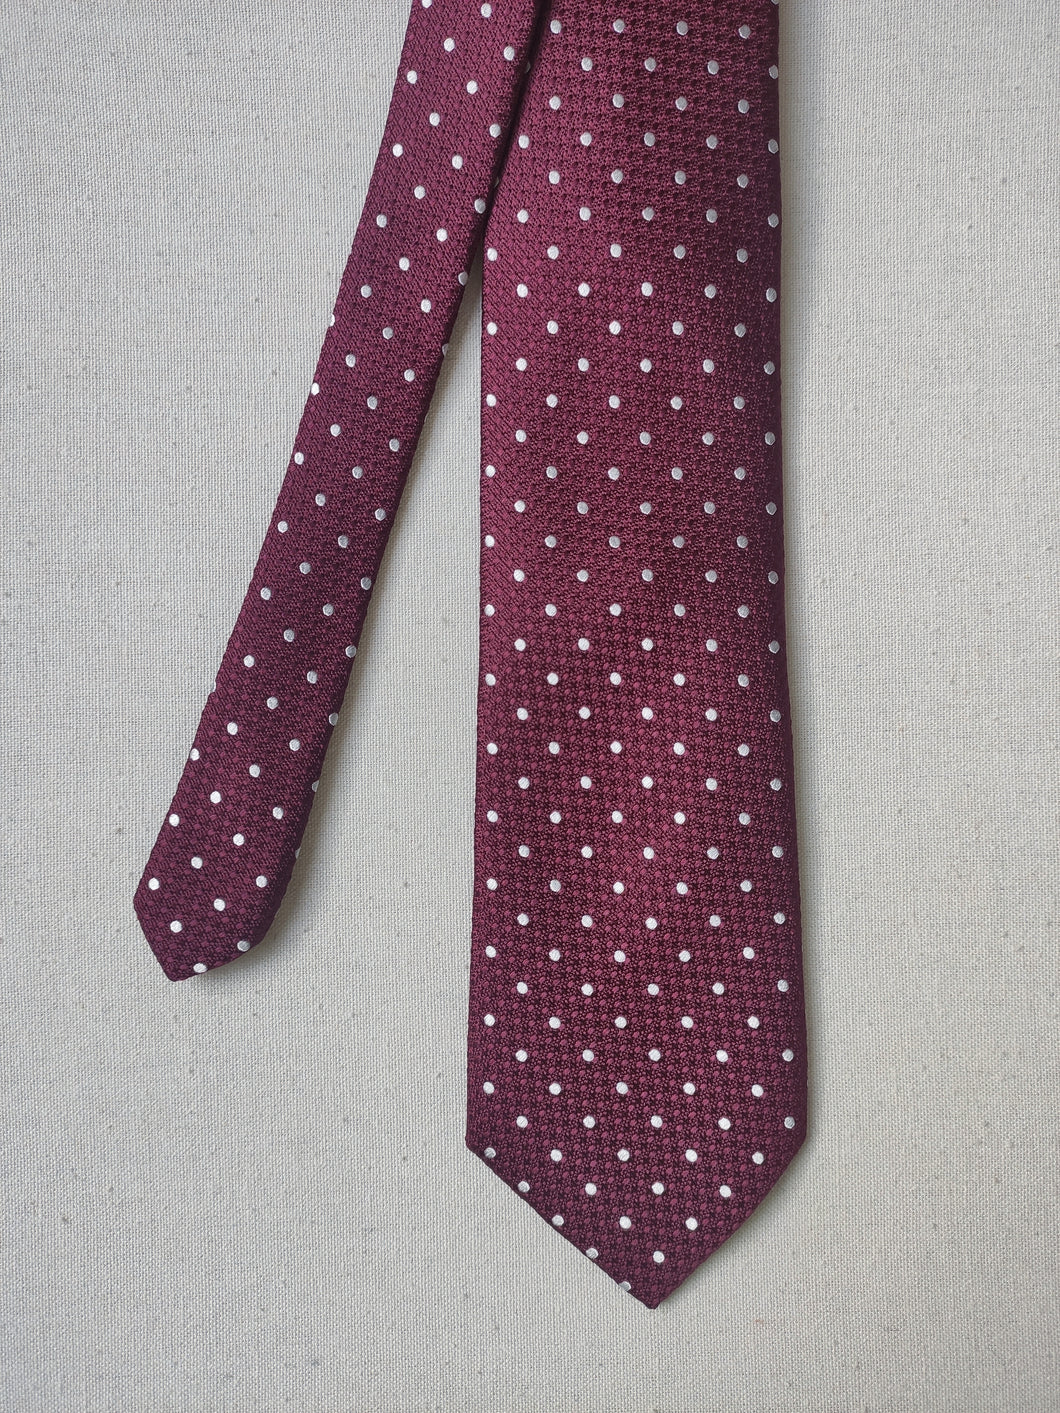 De Fursac cravate bordeaux à pois en soie Made in Italy